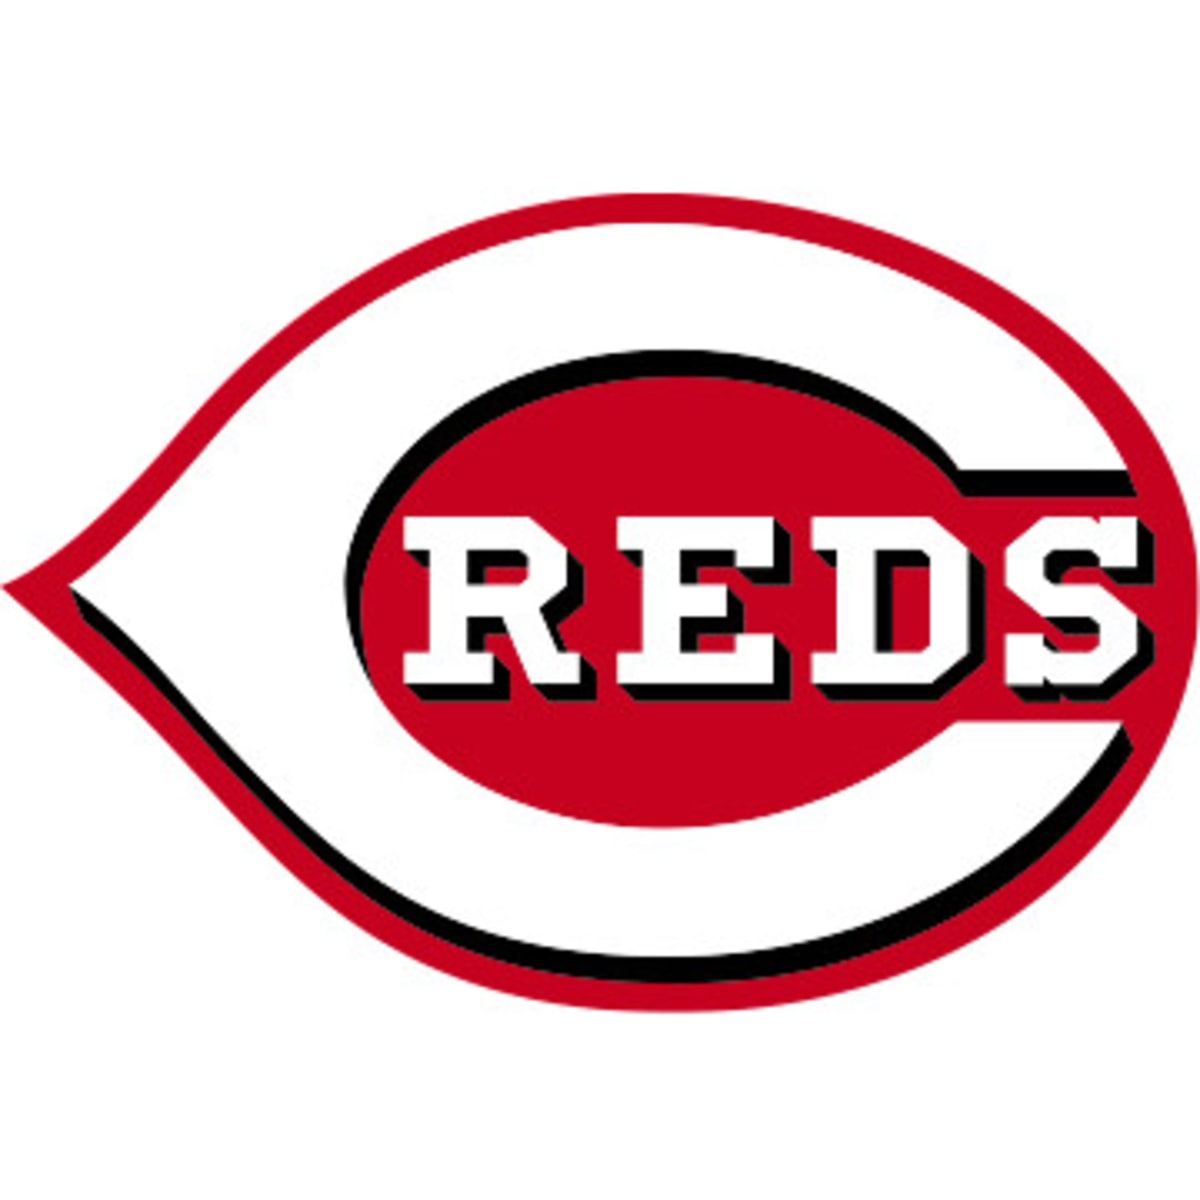 Cincinnati Reds - Cincinnati Reds updated their cover photo.